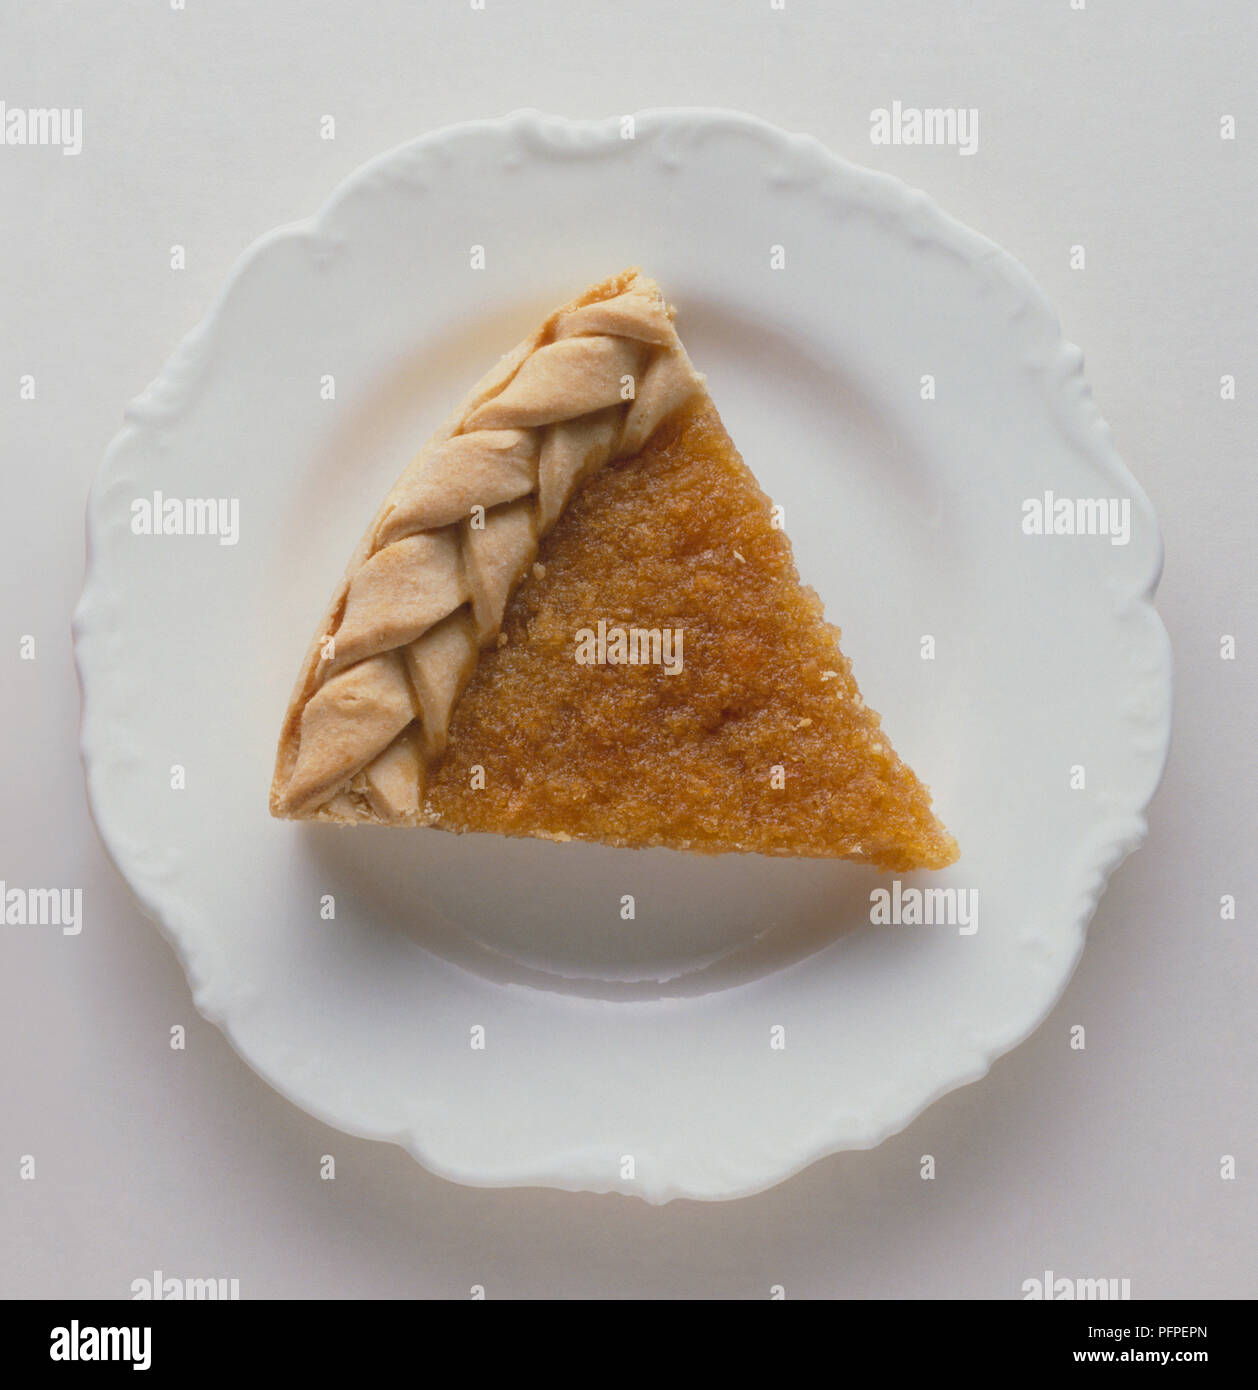 Scheibe treacle Tart mit geflochtener Kruste auf Weiß Dessertteller Stockfoto